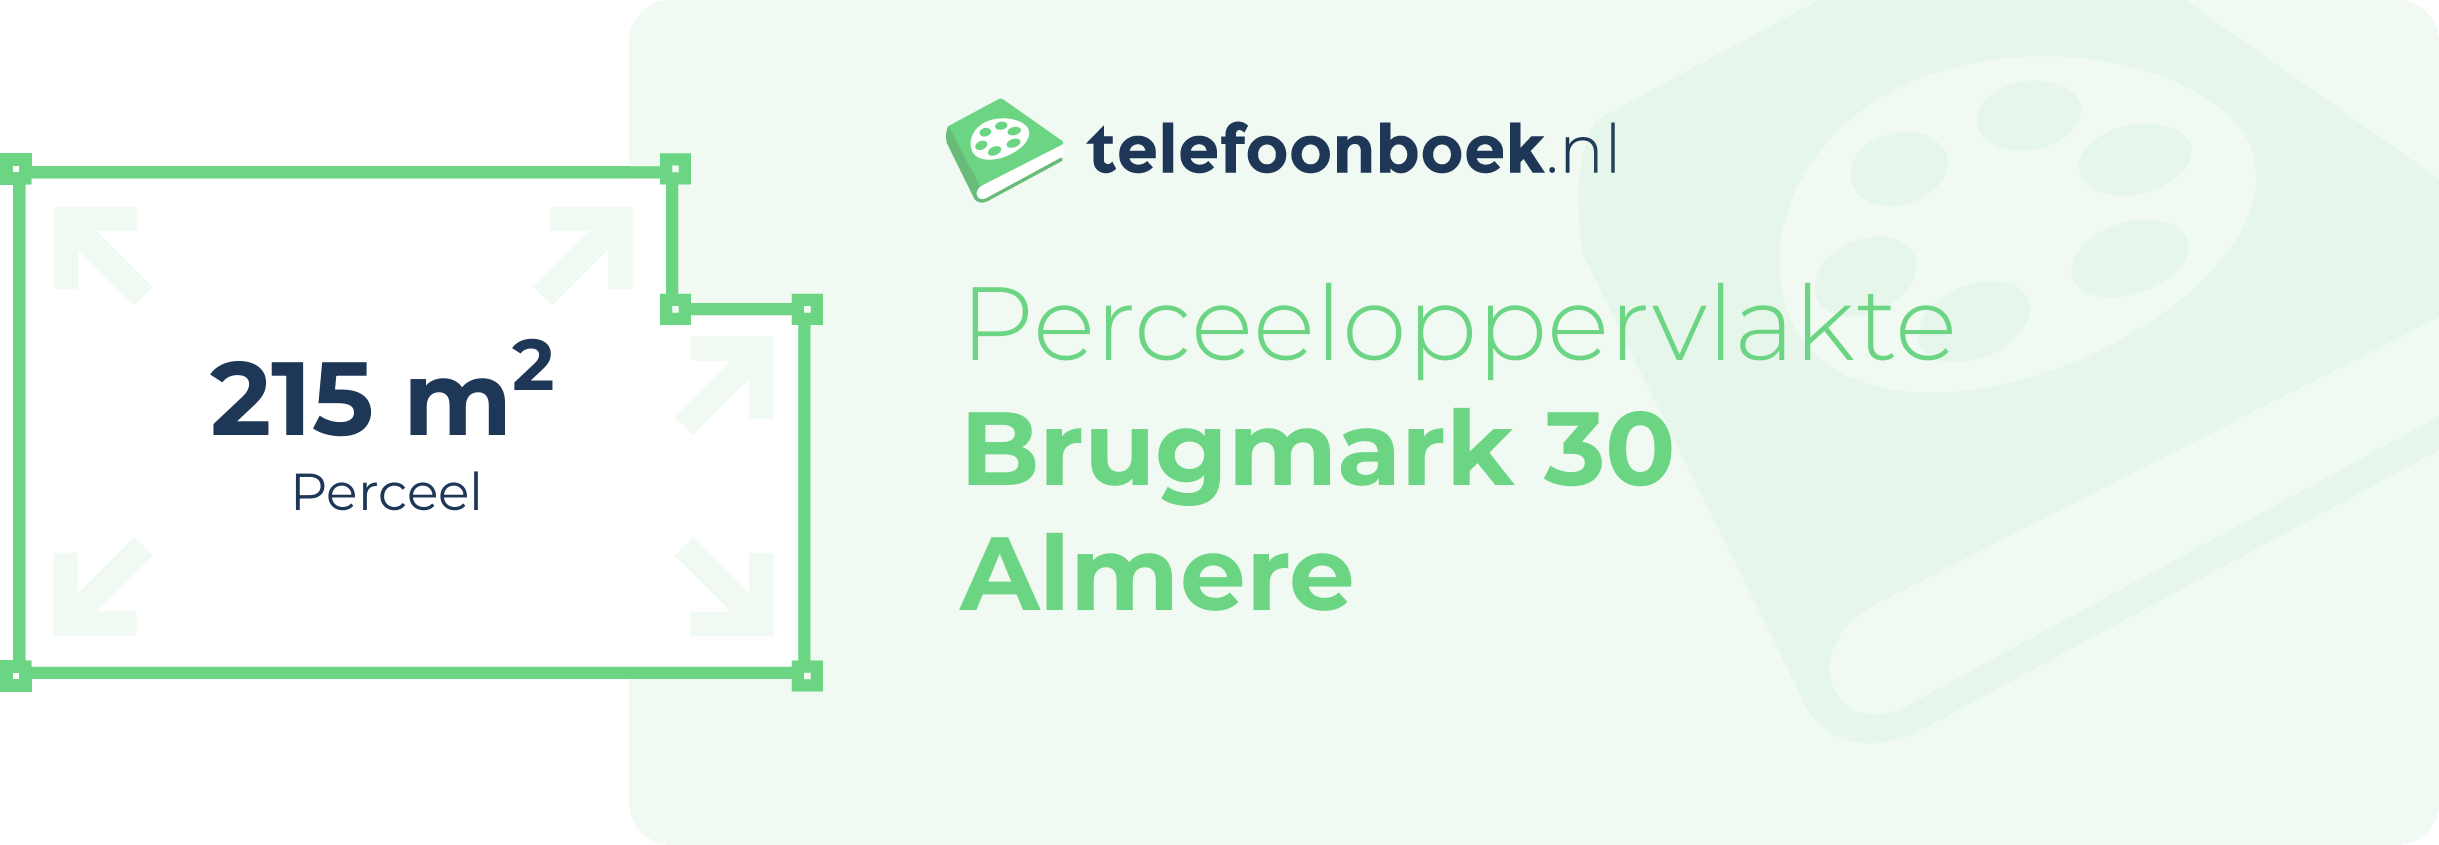 Perceeloppervlakte Brugmark 30 Almere